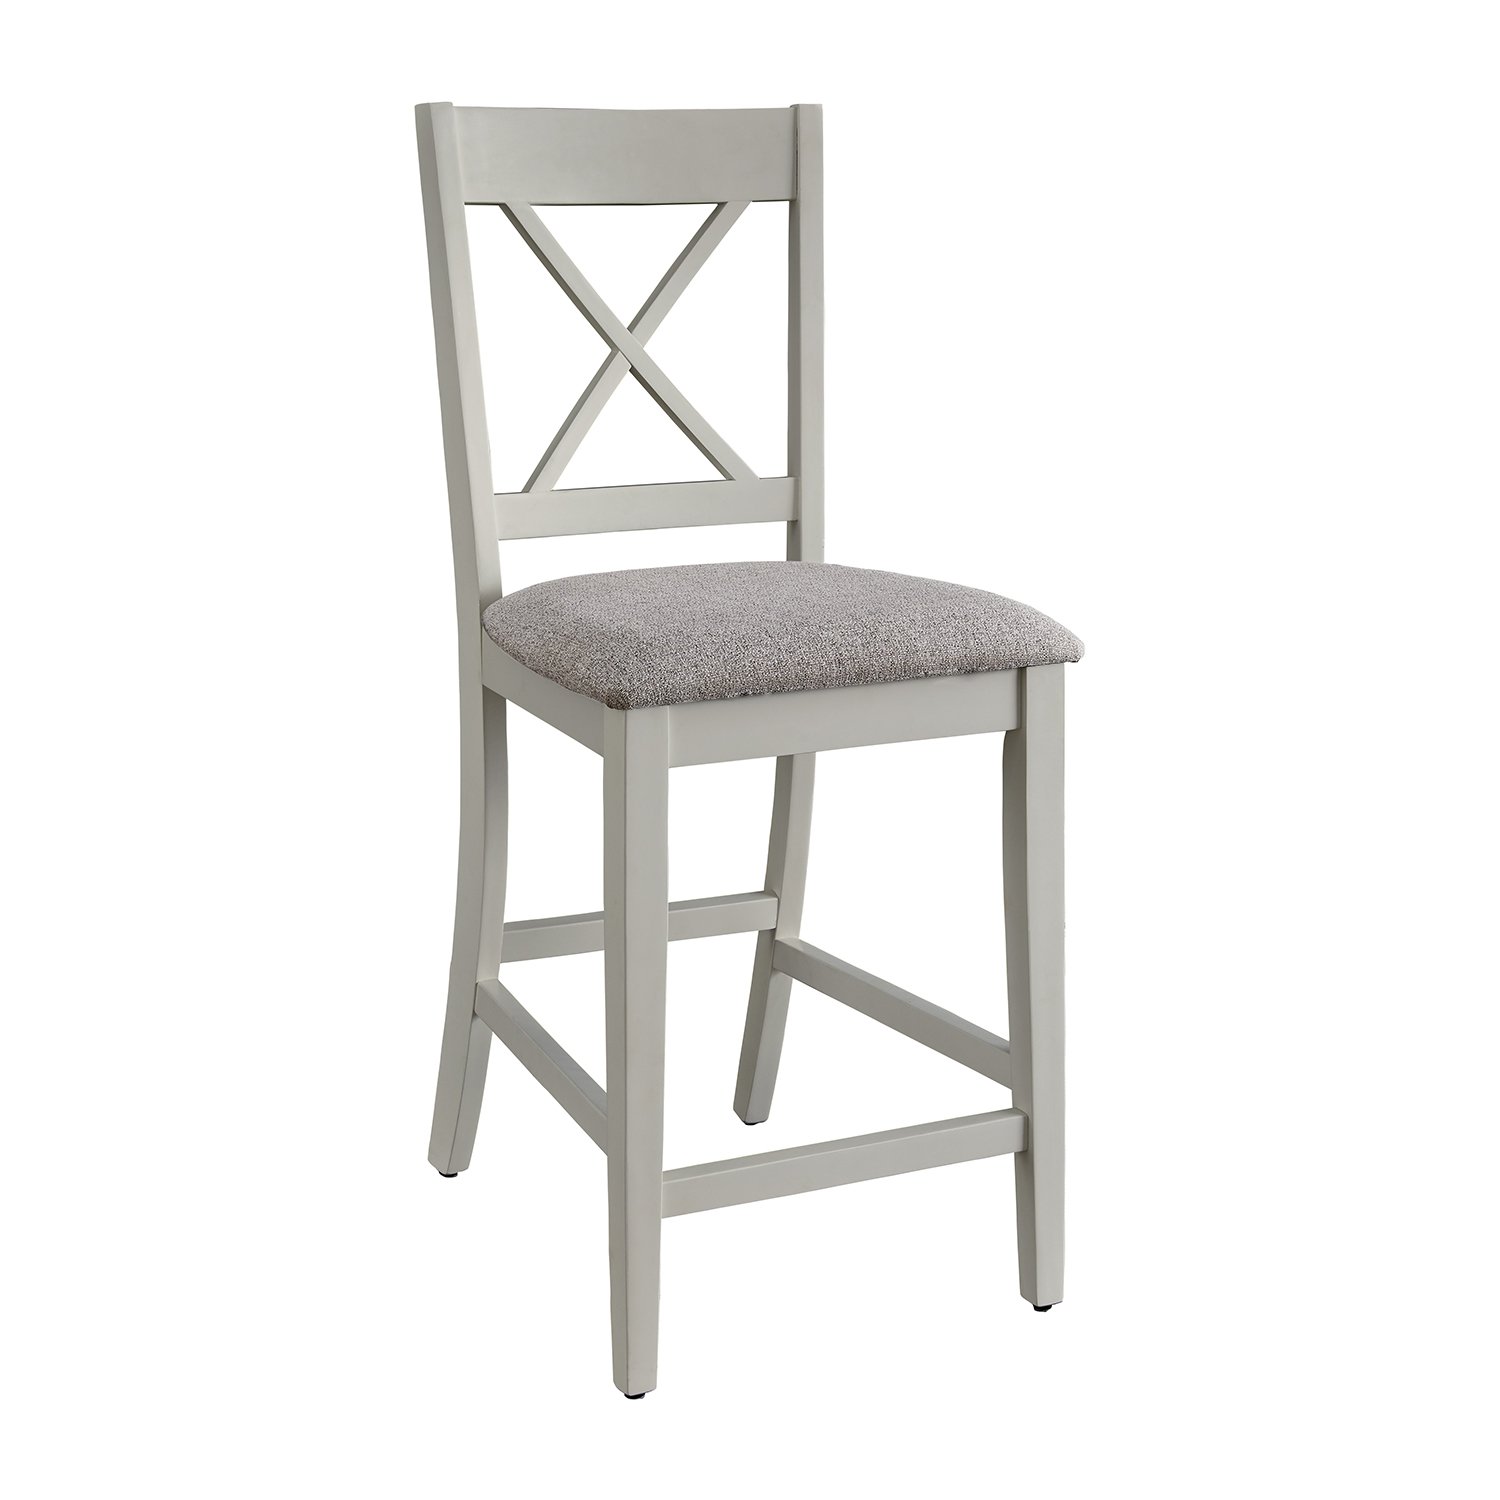 D865-12 Chair.jpg